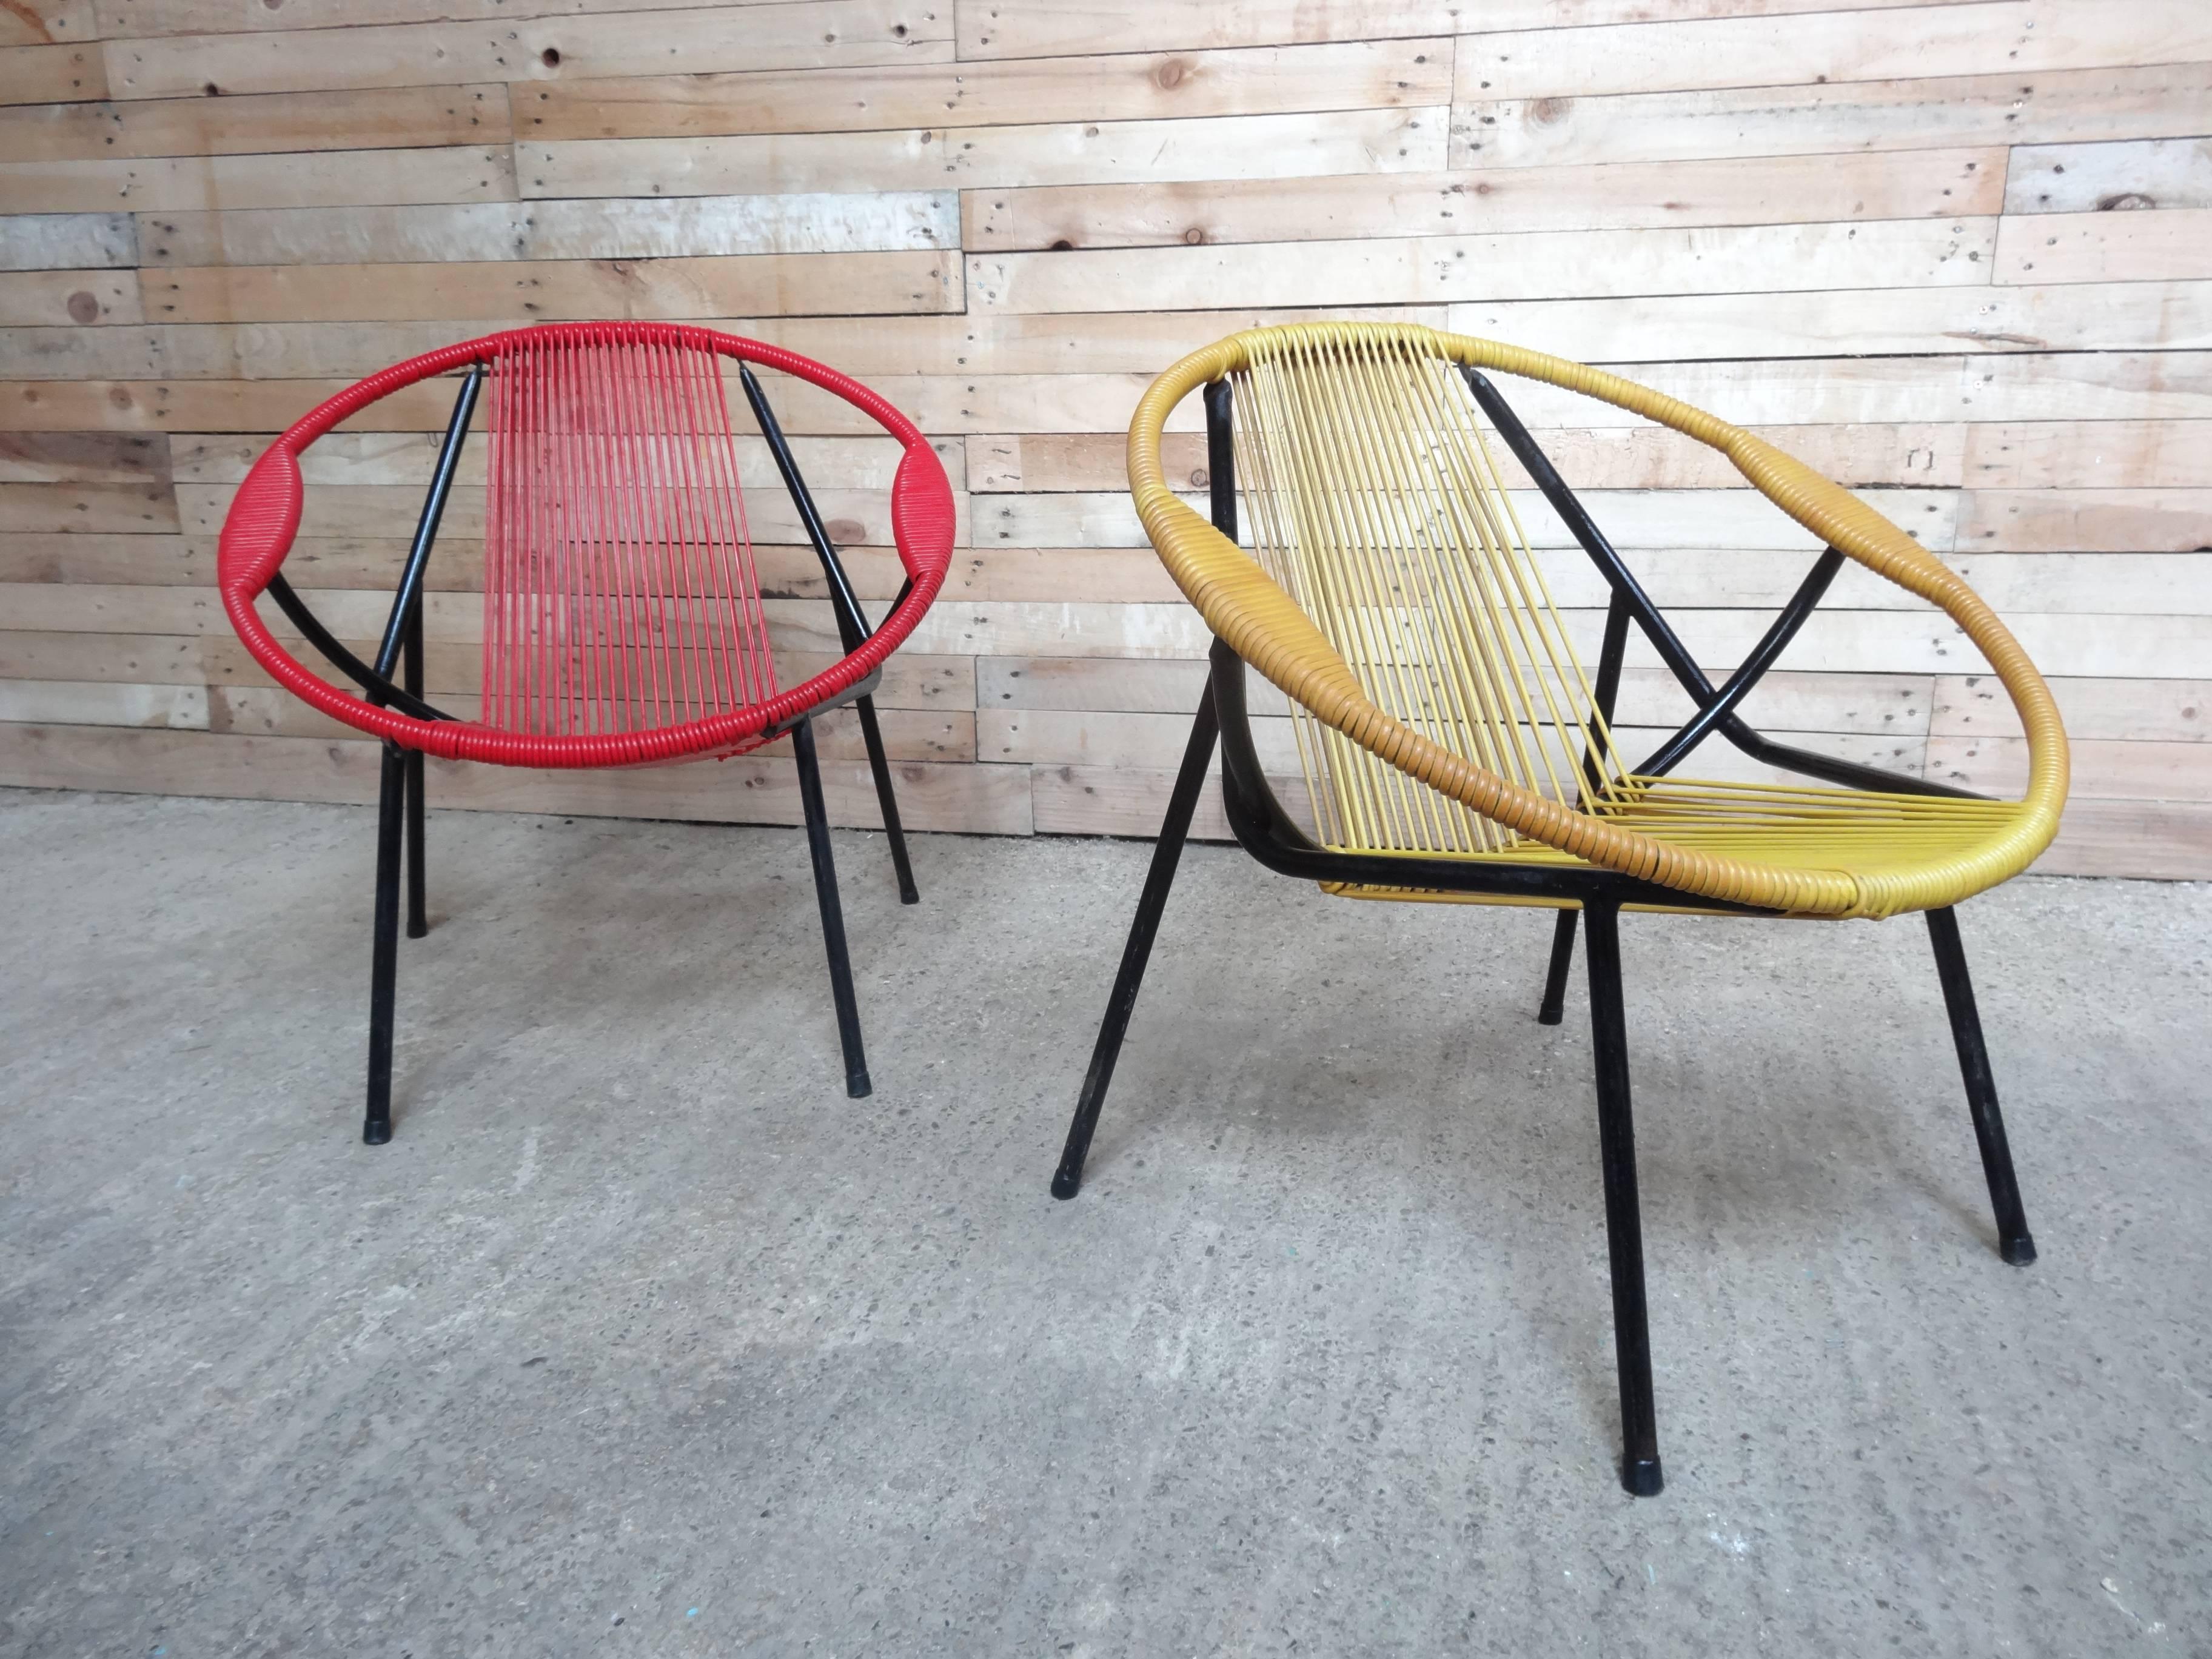 
ensemble de chaises Spaghetti des années 1960, extrêmement recherché, en parfait état. 

 Hauteur du siège : 35cm, hauteur : 66cm, profondeur : 66cm, largeur : 66cm.

